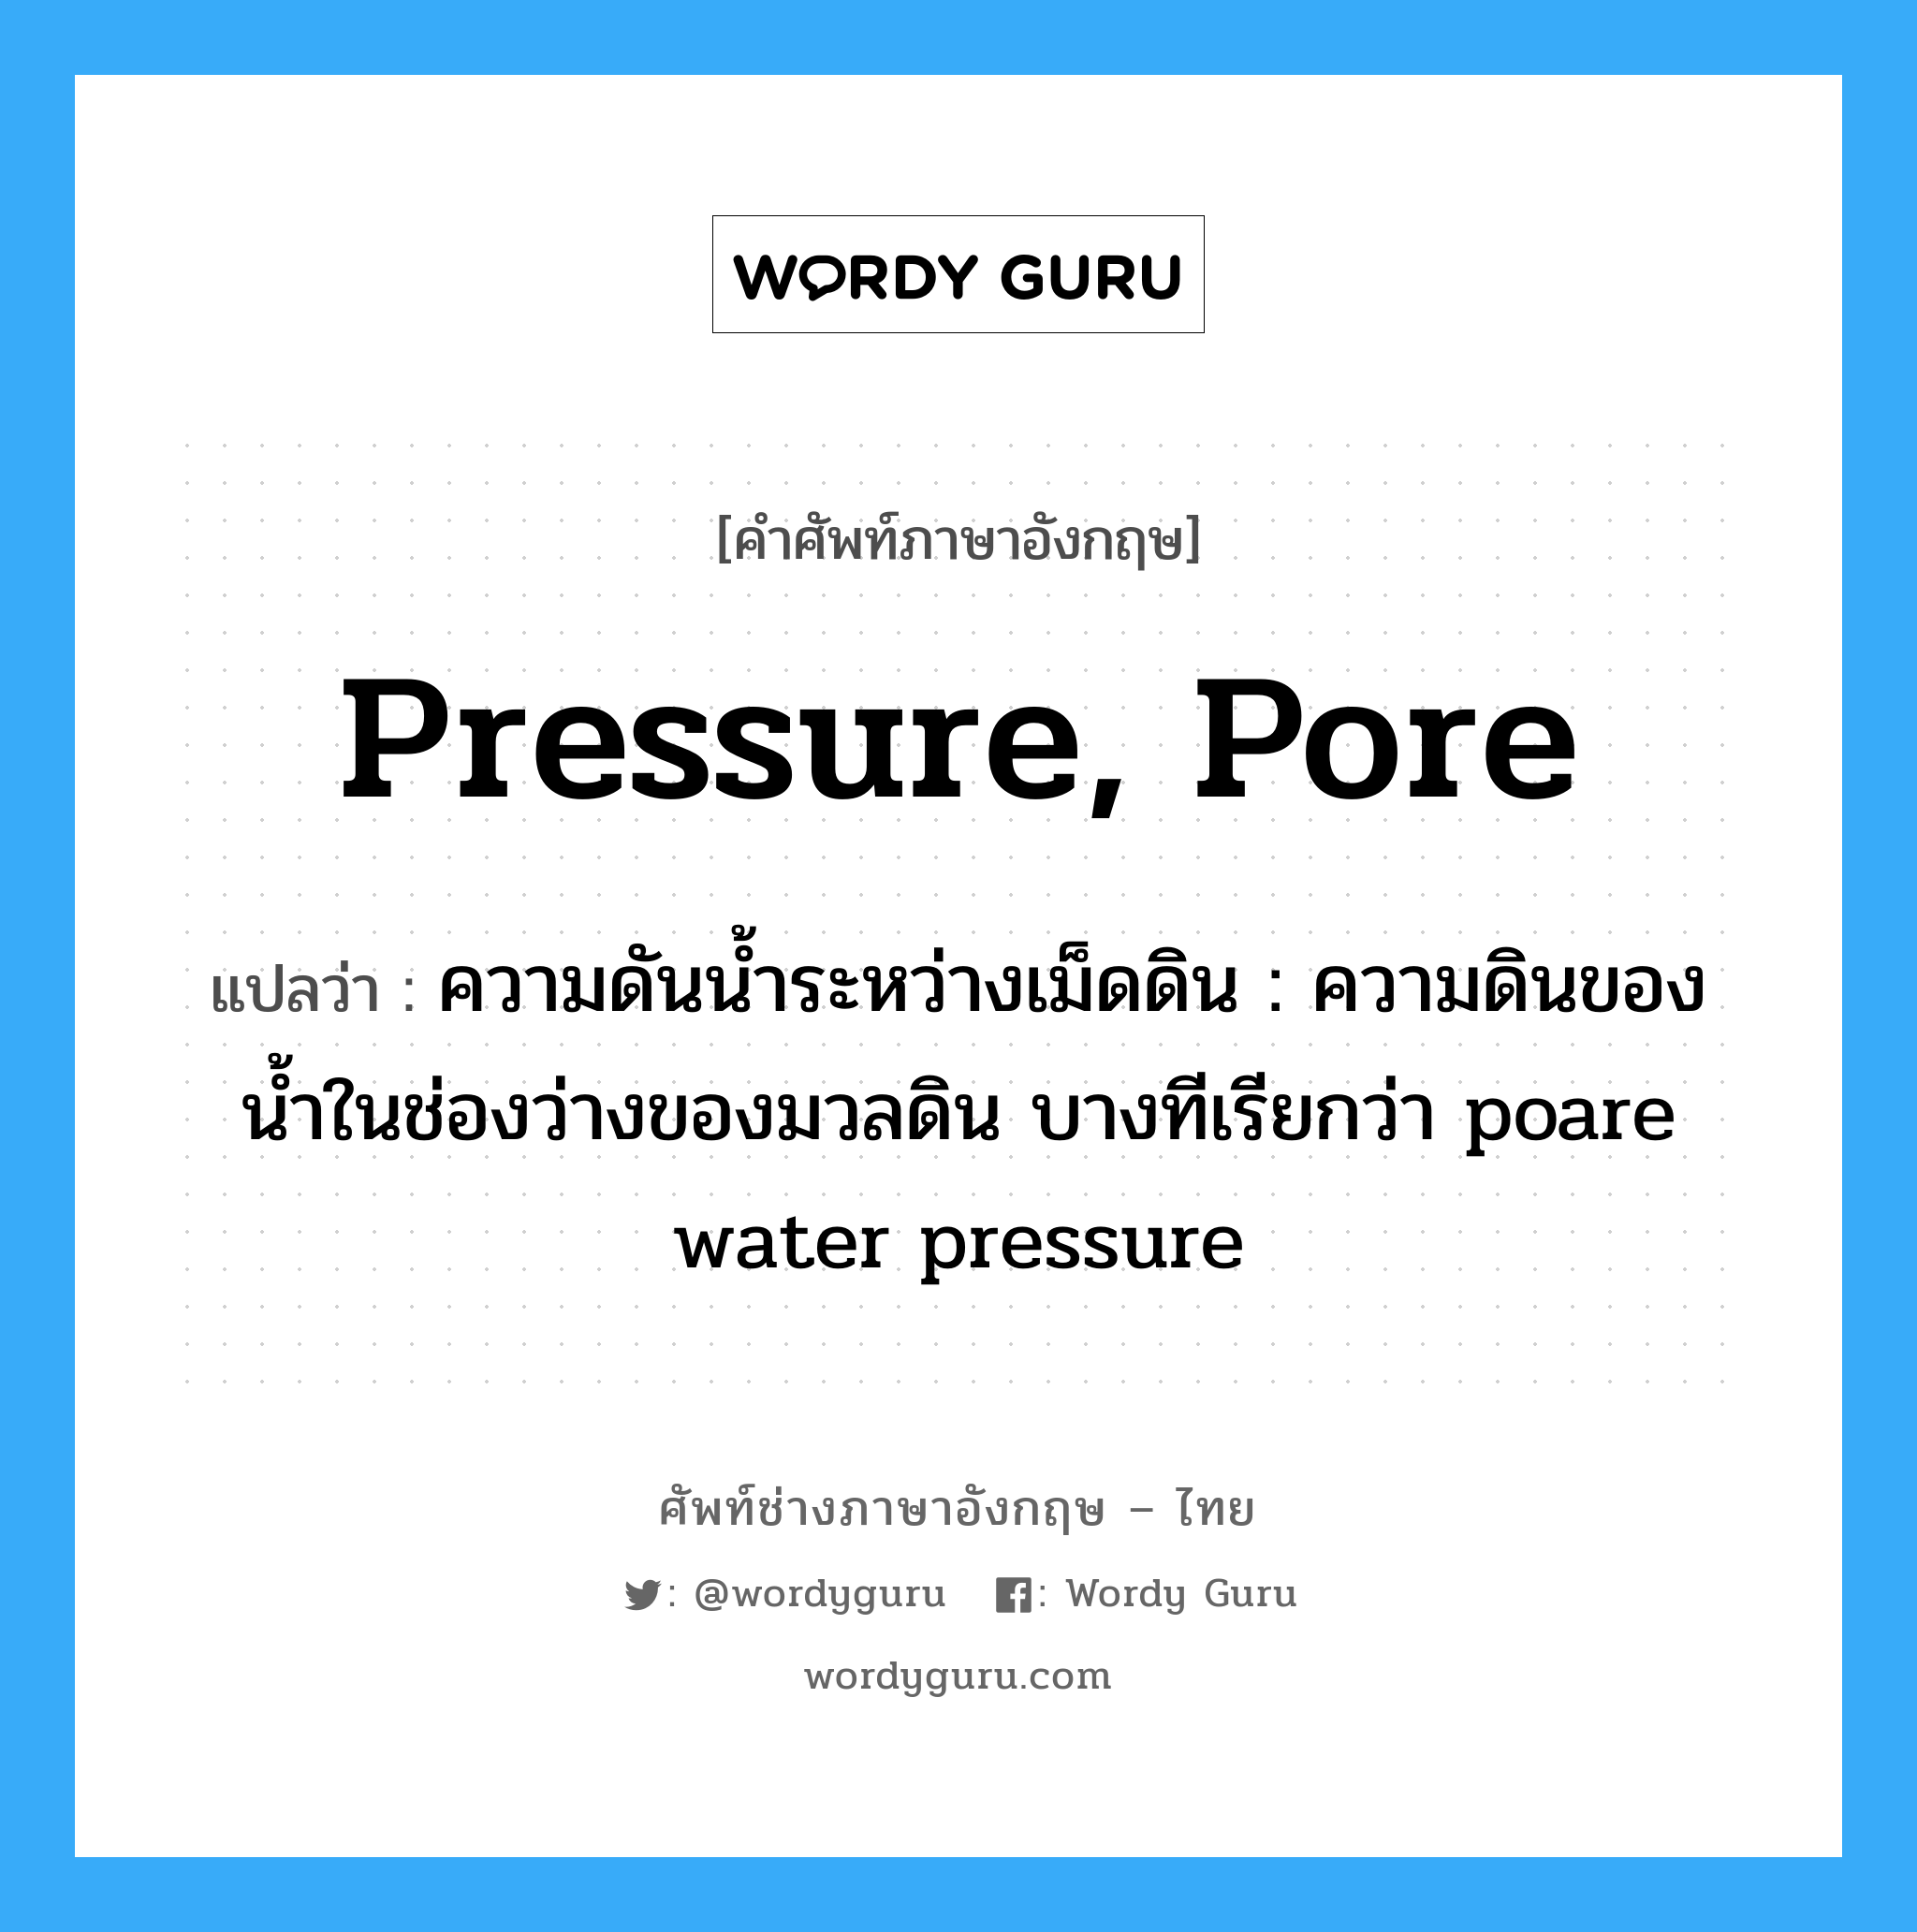 ความดันน้ำระหว่างเม็ดดิน : ความดินของน้ำในช่องว่างของมวลดิน บางทีเรียกว่า poare water pressure ภาษาอังกฤษ?, คำศัพท์ช่างภาษาอังกฤษ - ไทย ความดันน้ำระหว่างเม็ดดิน : ความดินของน้ำในช่องว่างของมวลดิน บางทีเรียกว่า poare water pressure คำศัพท์ภาษาอังกฤษ ความดันน้ำระหว่างเม็ดดิน : ความดินของน้ำในช่องว่างของมวลดิน บางทีเรียกว่า poare water pressure แปลว่า pressure, pore